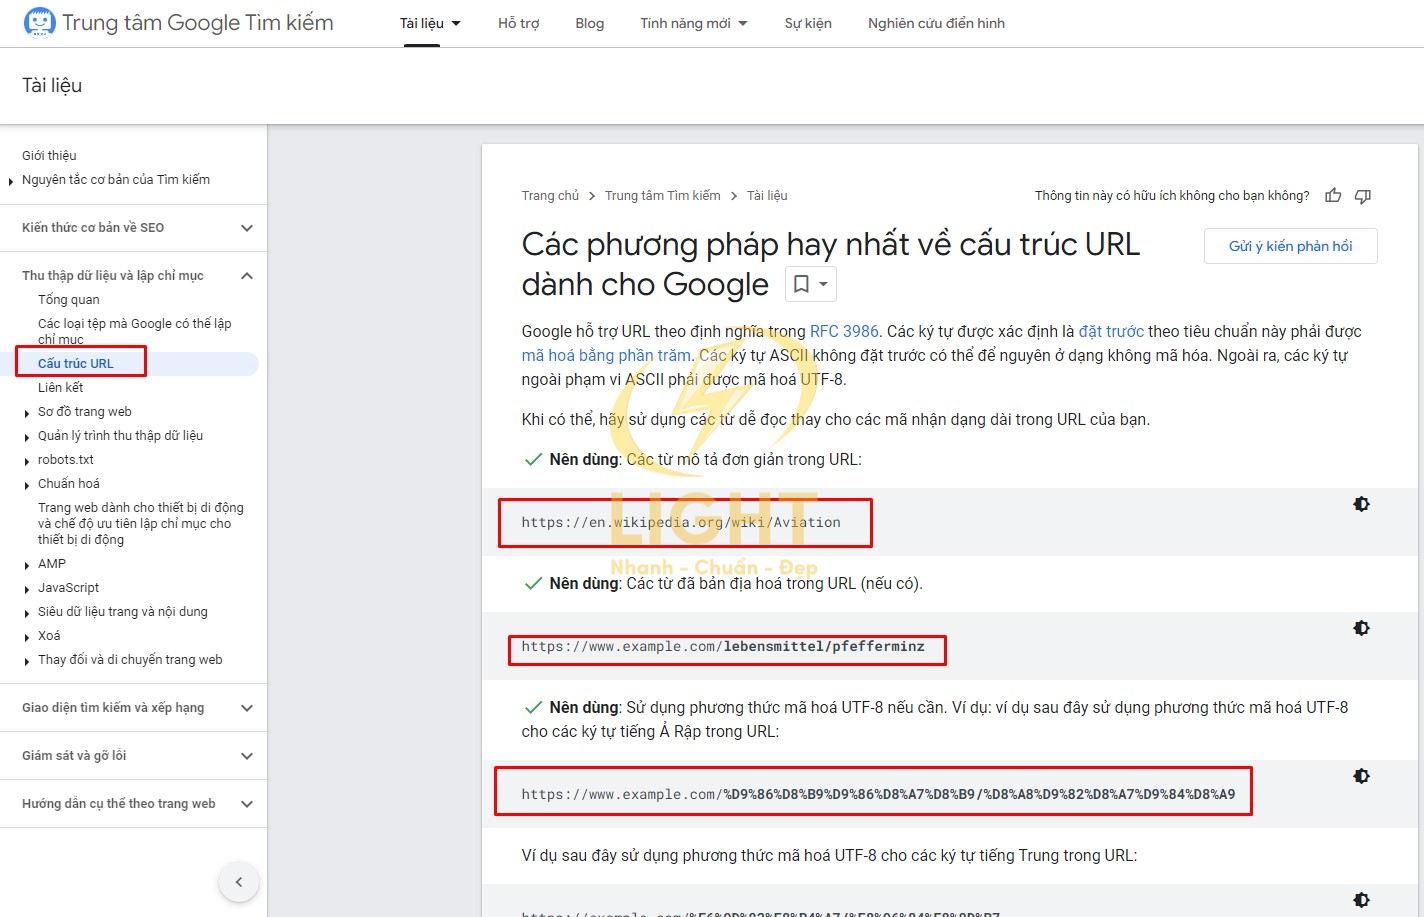 Cách tối ưu đường dẫn URL mà Google khuyên dùng